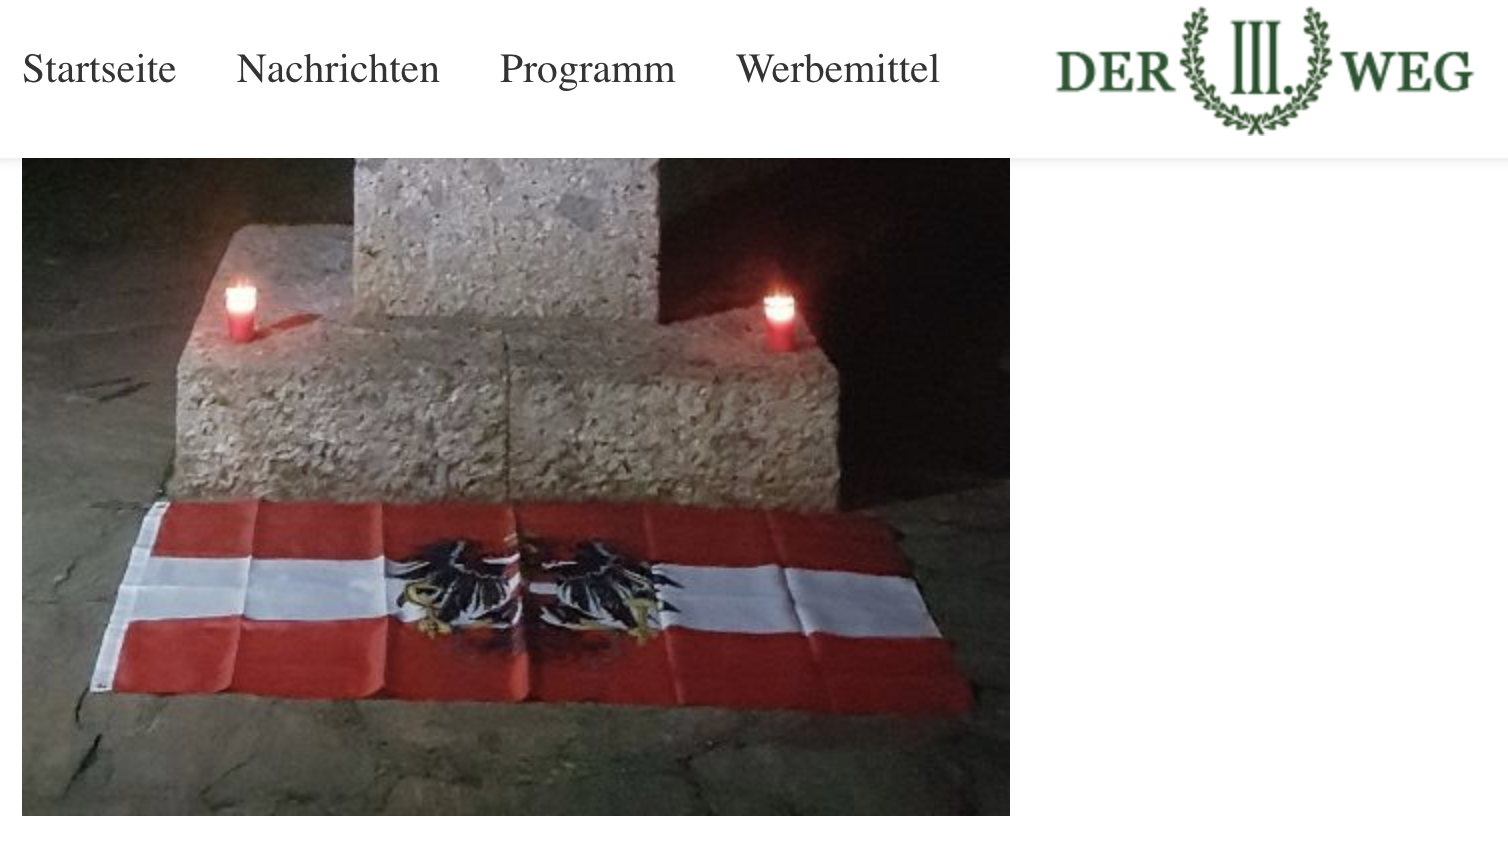 Rechtsextremes Gedenken mit Kerzen und Österreich-Flagge in Bregenz beim Andreas Hofer-Denkmal (Screenshot "Der III. Weg")